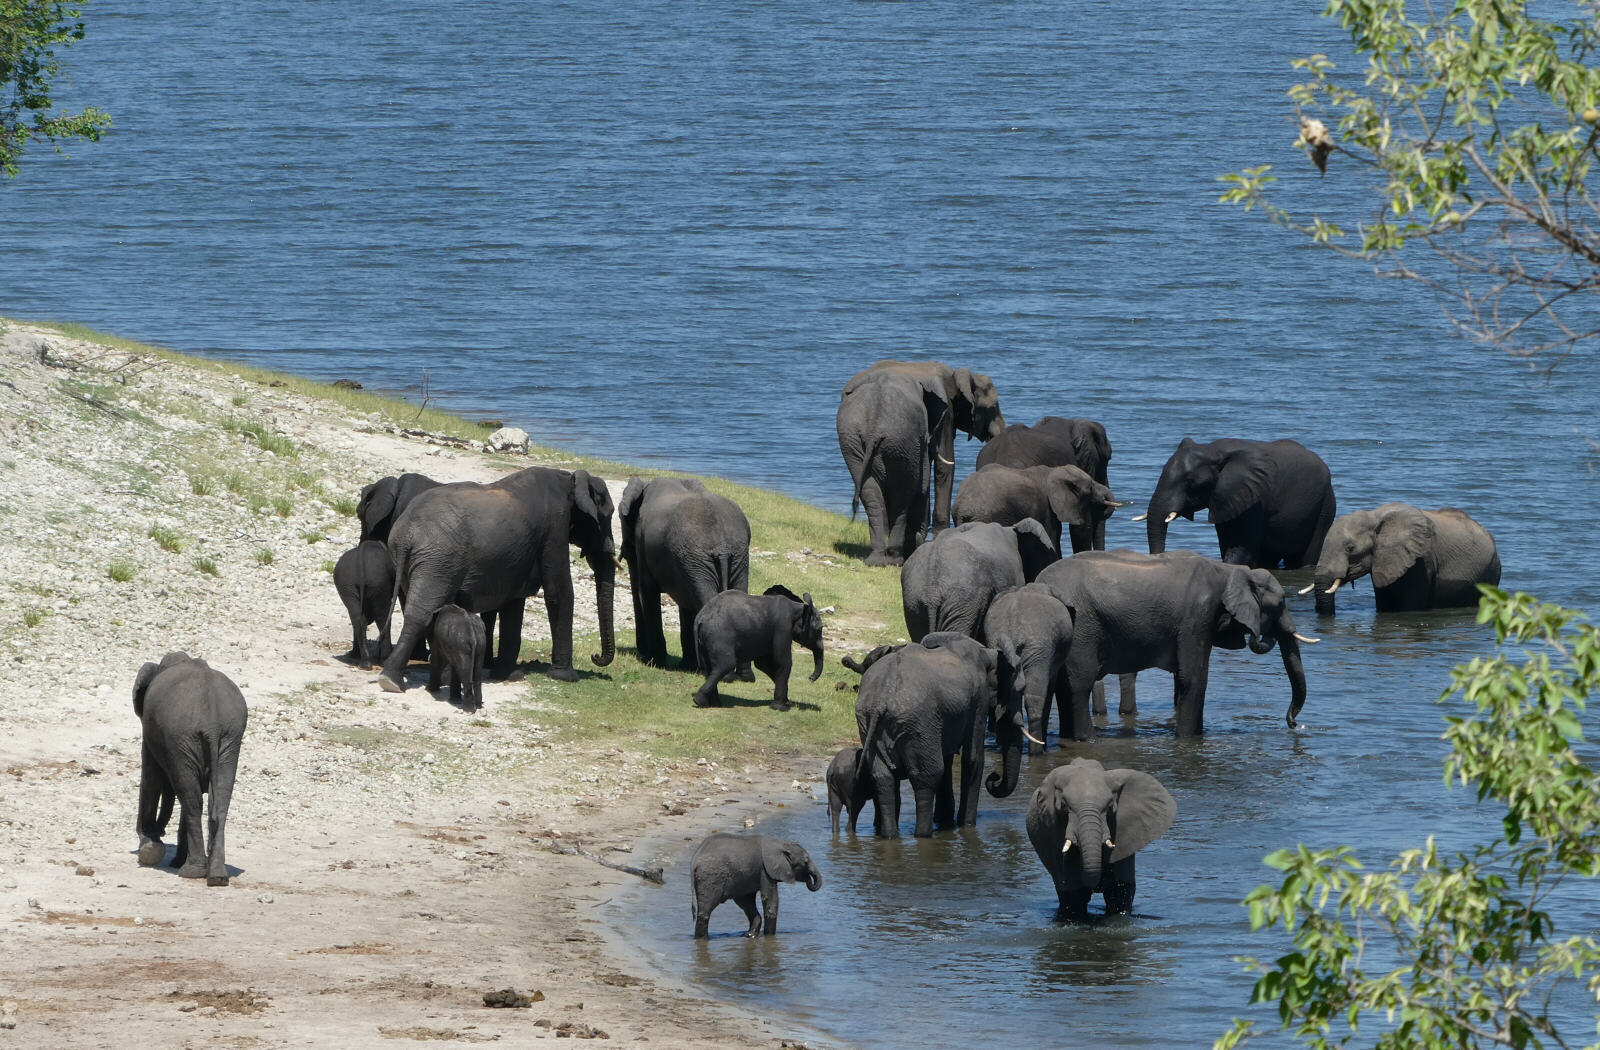 Elephants by the Chobe river, Botswana